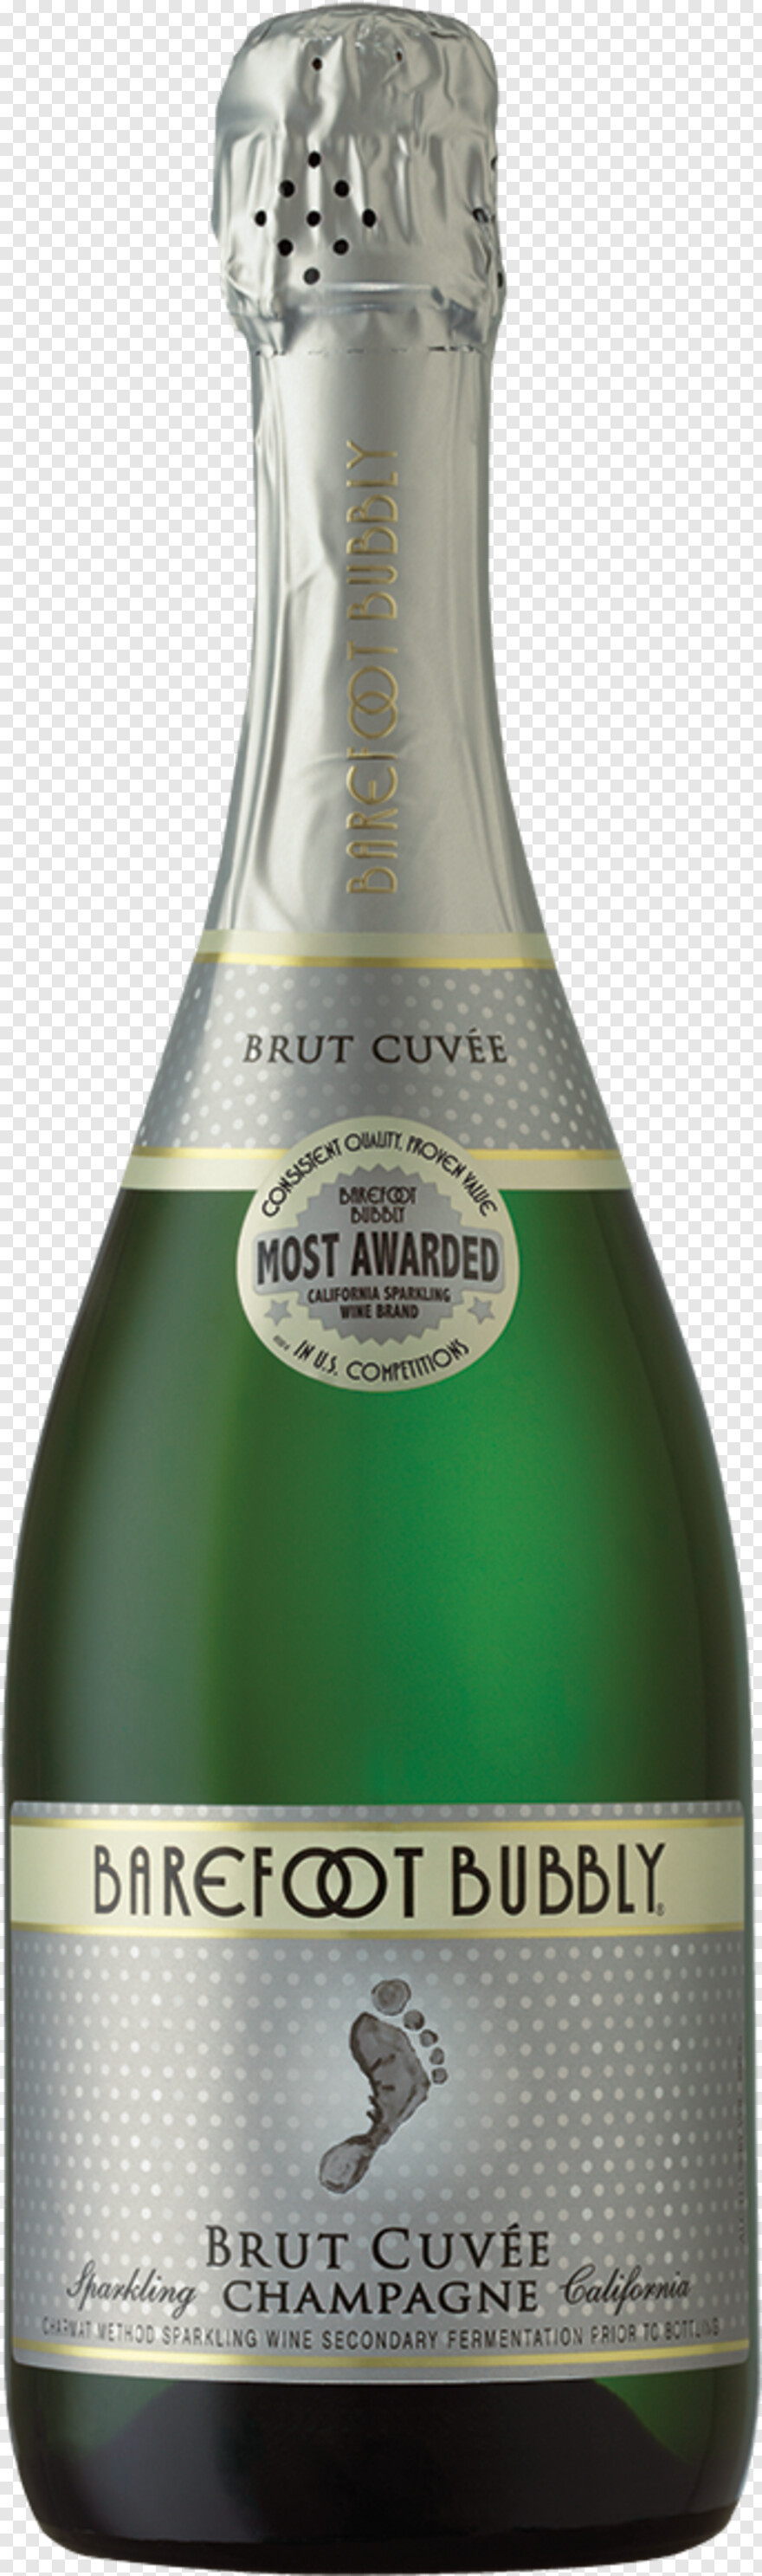 champagne-bottle # 1107314